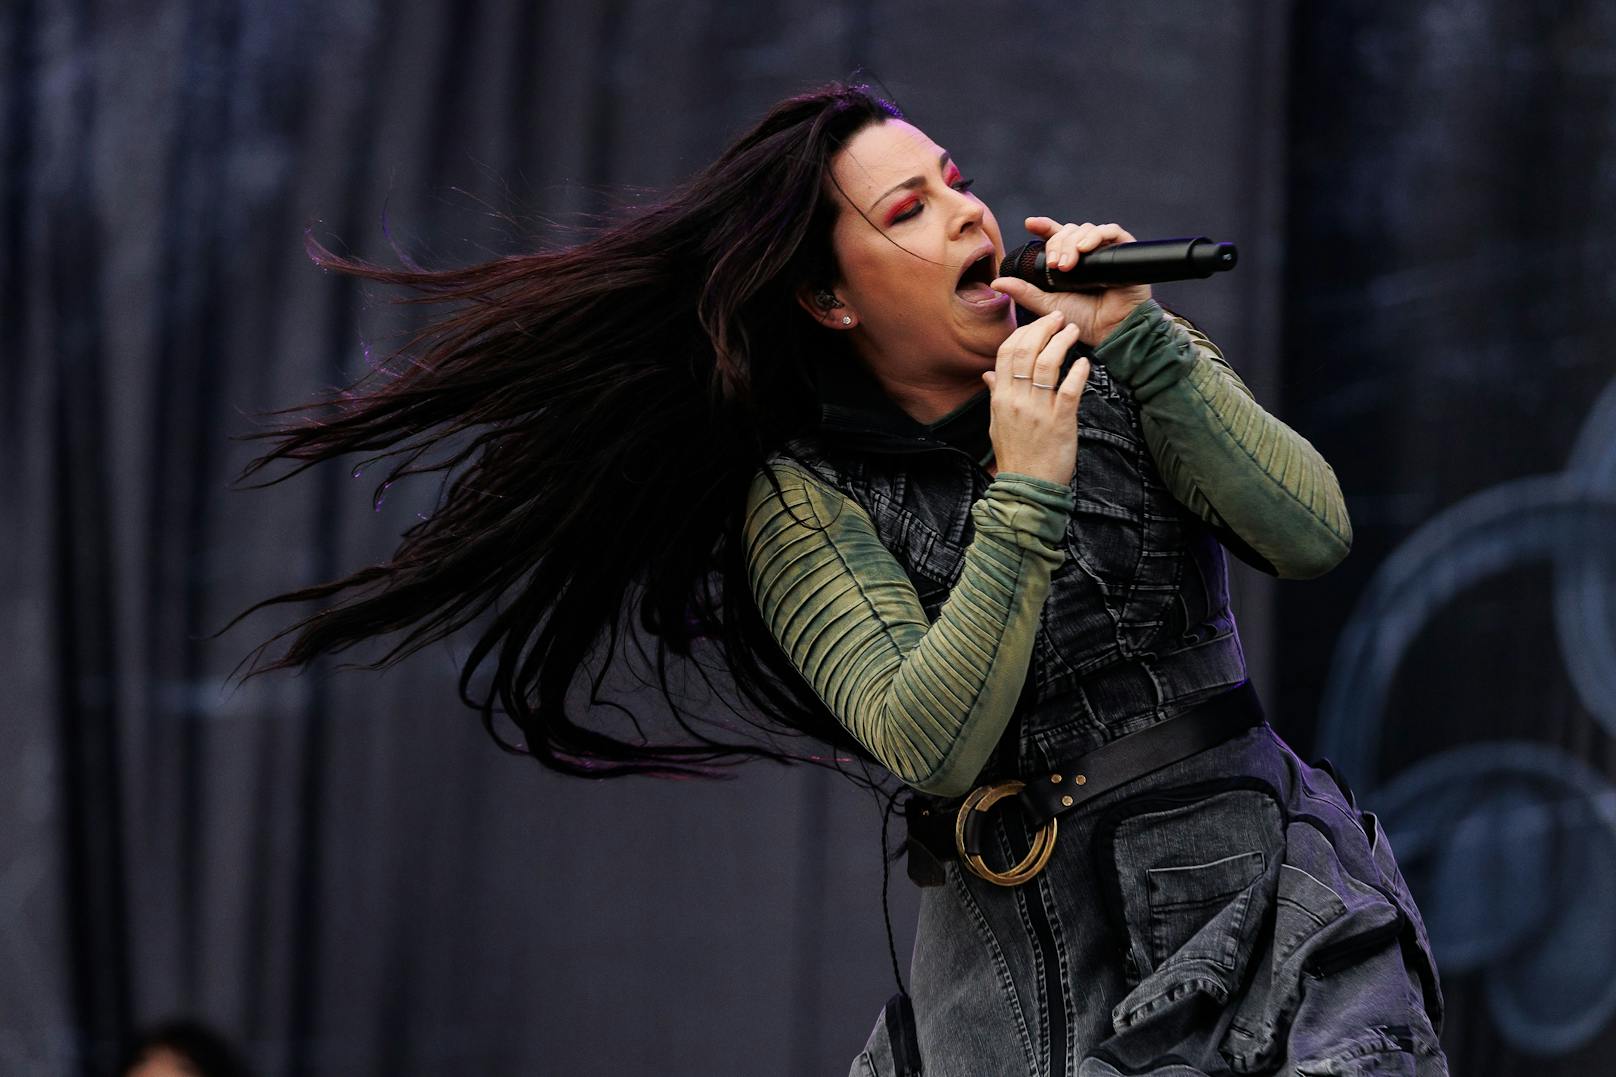 Sängerin Amy Lee von der Band "Evanescence" 